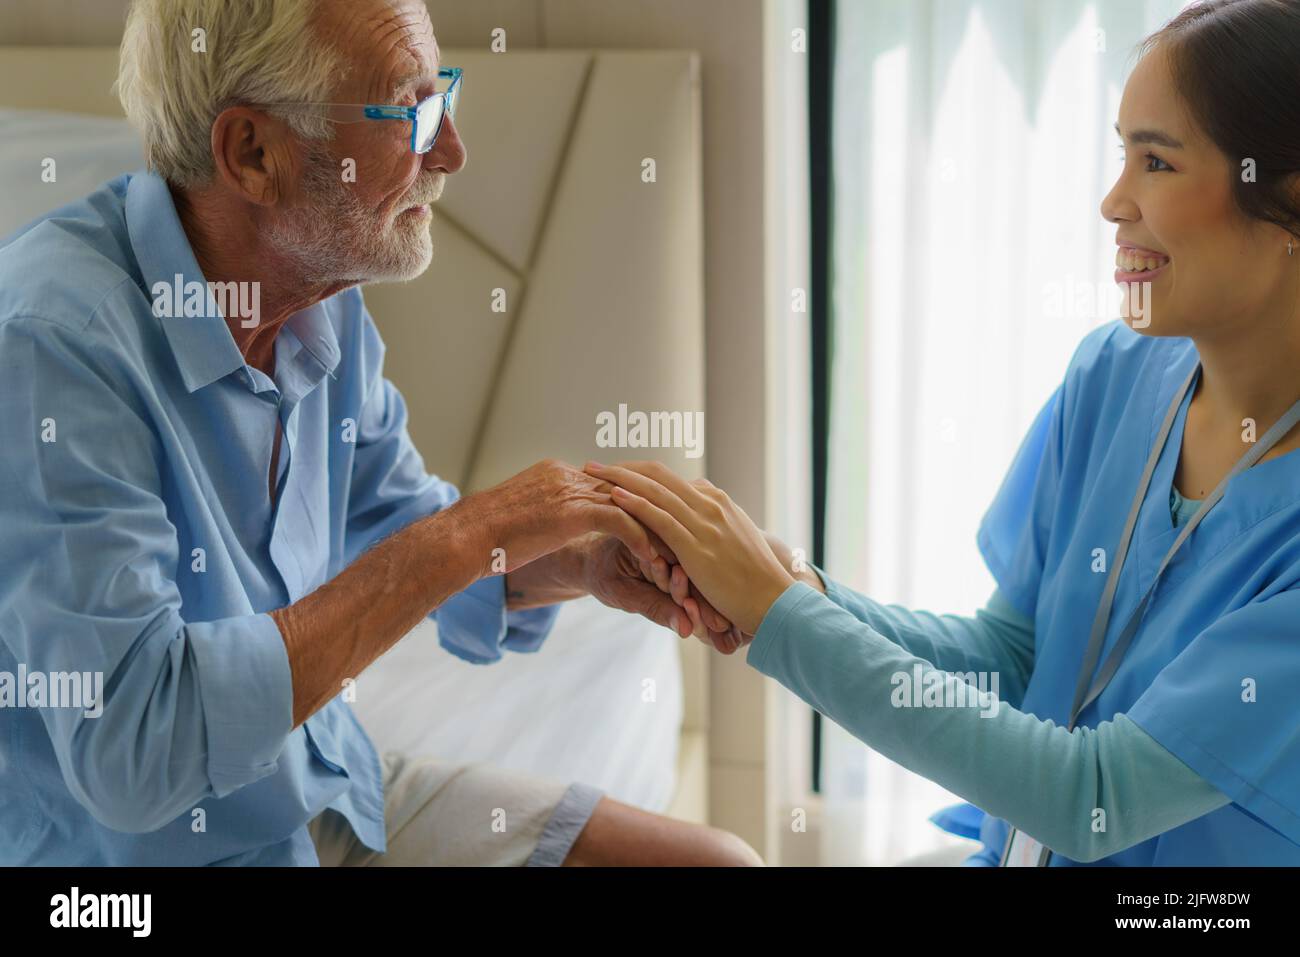 Enfermera asiática de pie en una cama de la casa junto a un hombre mayor que ayuda las manos, el cuidado. Atención al paciente de edad avanzada y estilo de vida de salud, concepto médico. Foto de stock